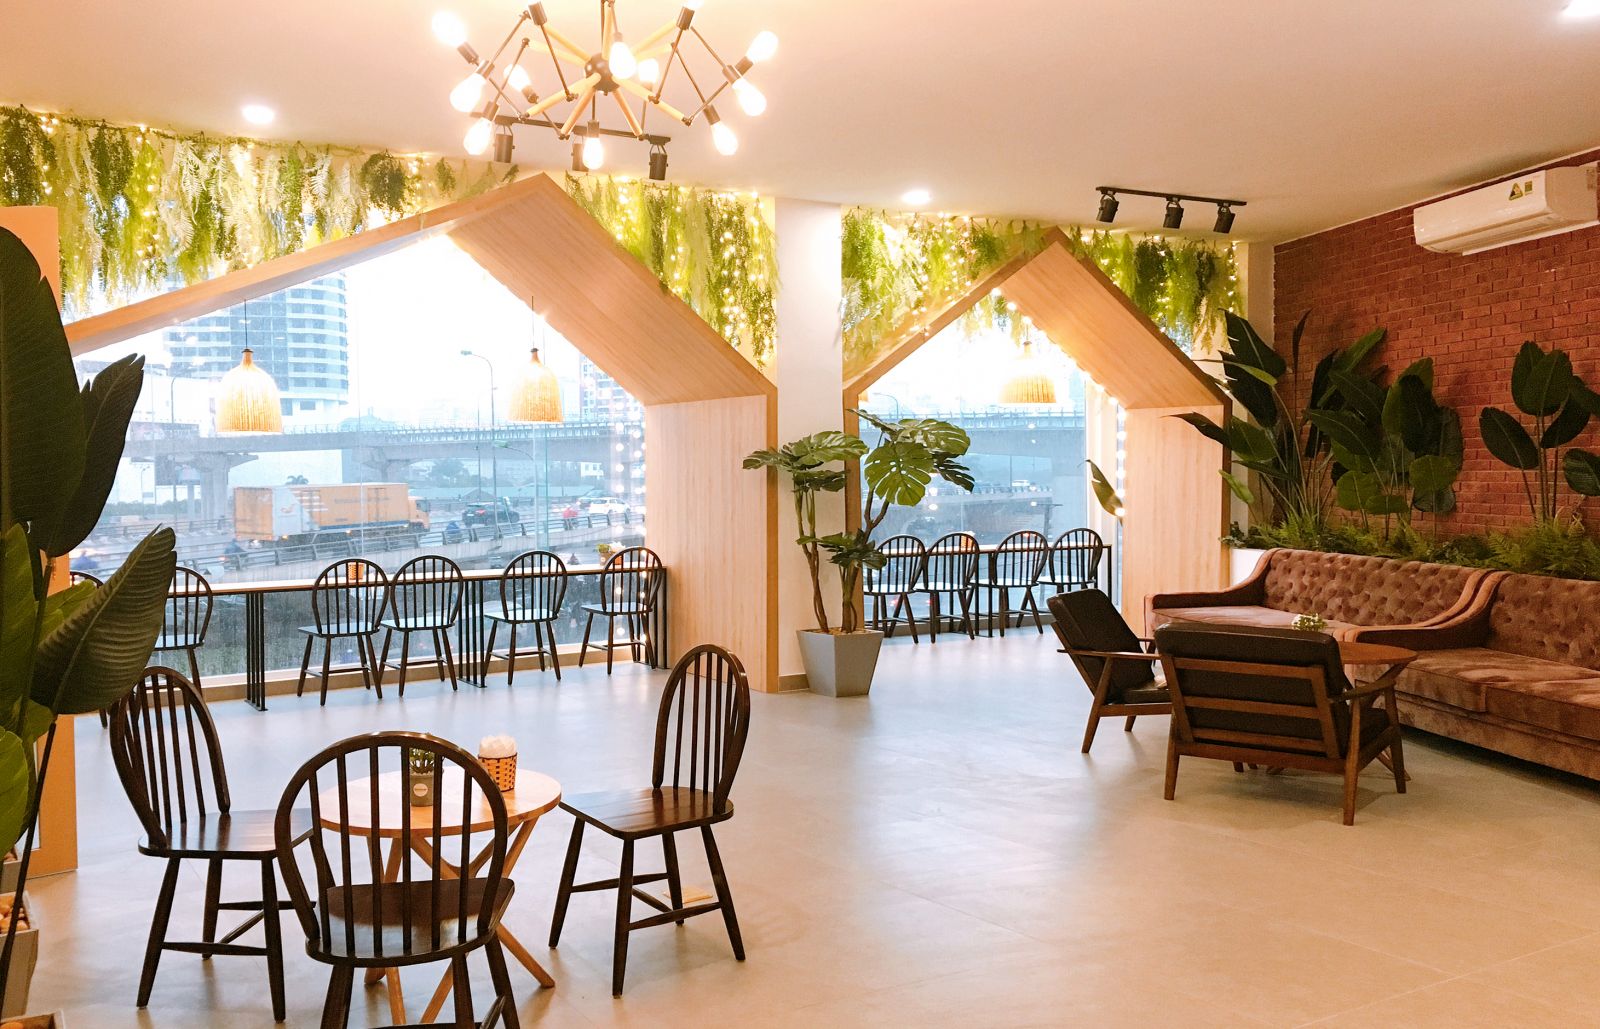 Nội thất đơn giản, gọn nhẹ, dễ vận chuyển và vệ sinh là một trong những đặc điểm của quán cà phê theo phong cách hàn quốc